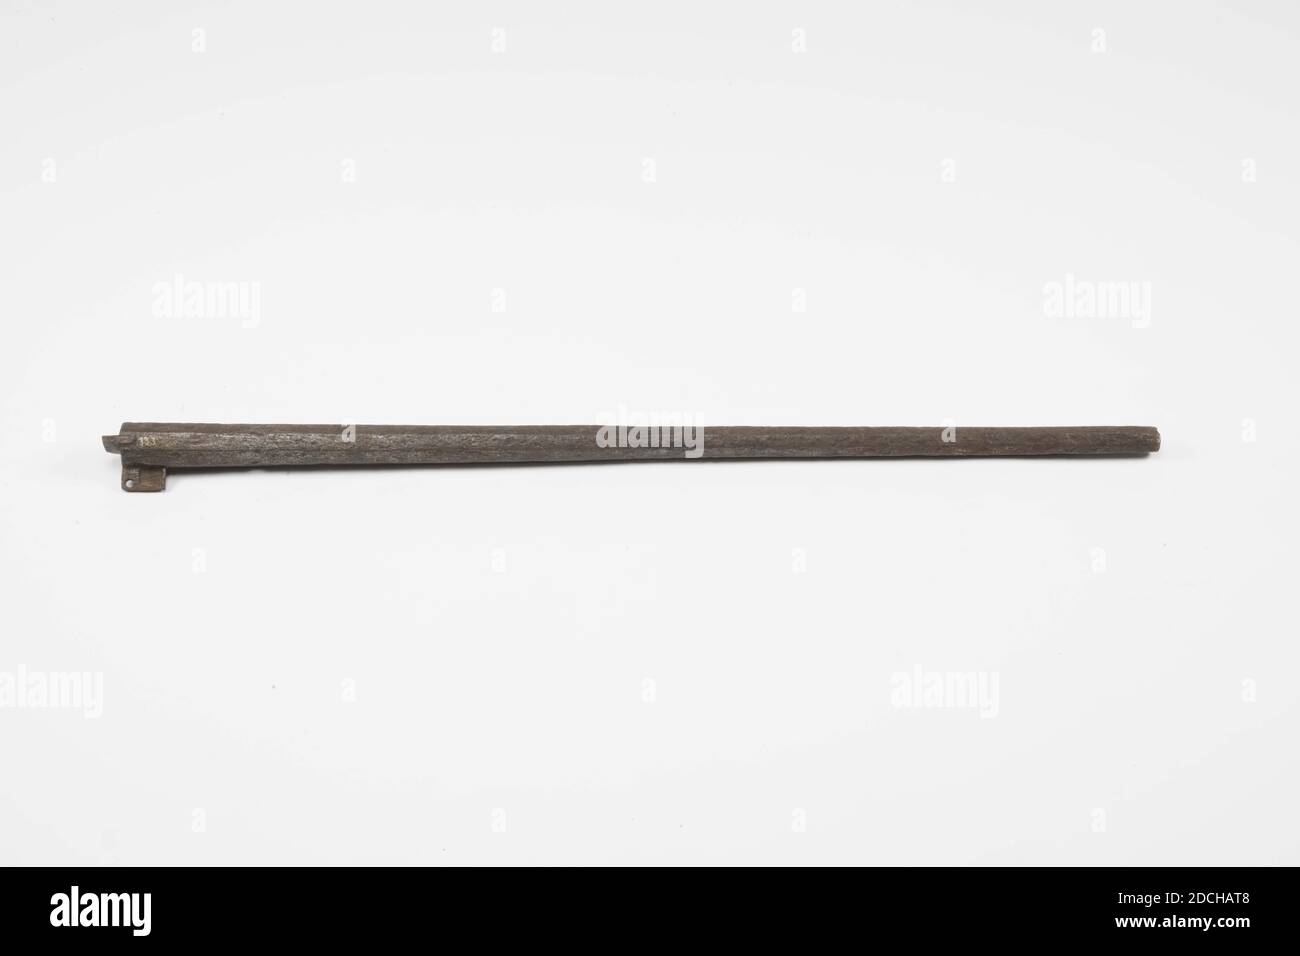 Fusil, Anonyme, XVIe siècle, forgé, fragment de canon en fer d'une barre d' allumettes, de forme octogonale, diminuant progressivement en épaisseur  vers l'avant et avec deux extrémités de canon sur la surface inférieure.